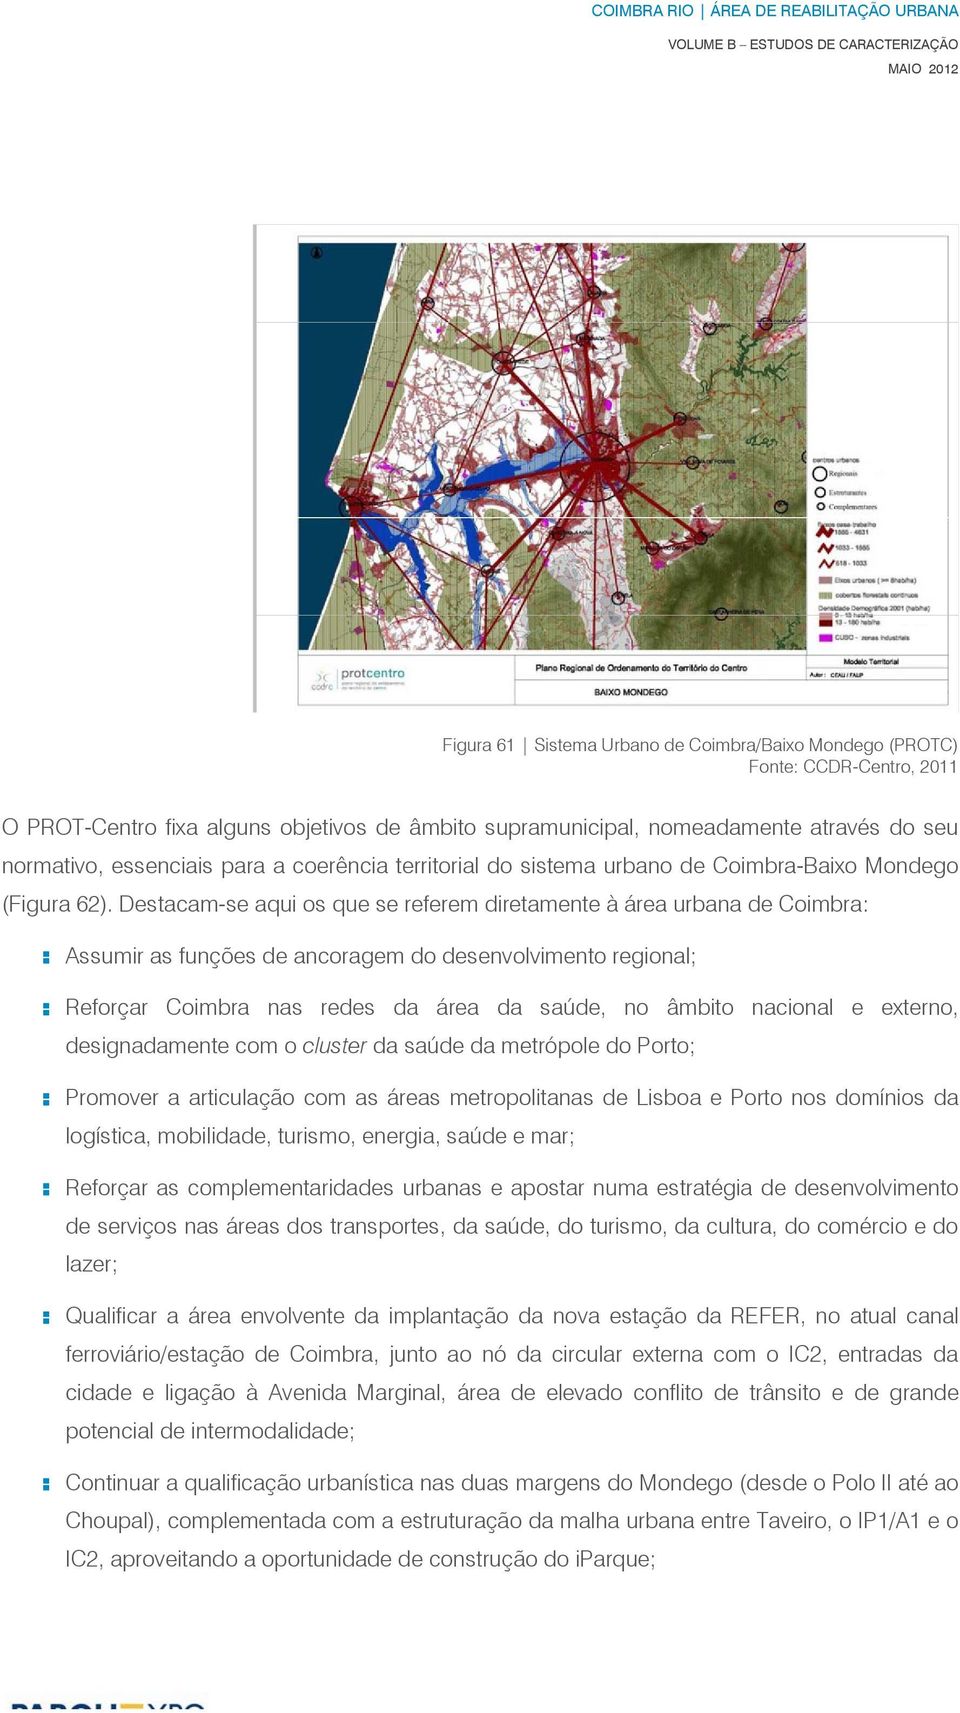 Destacam-se aqui os que se referem diretamente à área urbana de Coimbra: : Assumir as funções de ancoragem do desenvolvimento regional; : Reforçar Coimbra nas redes da área da saúde, no âmbito